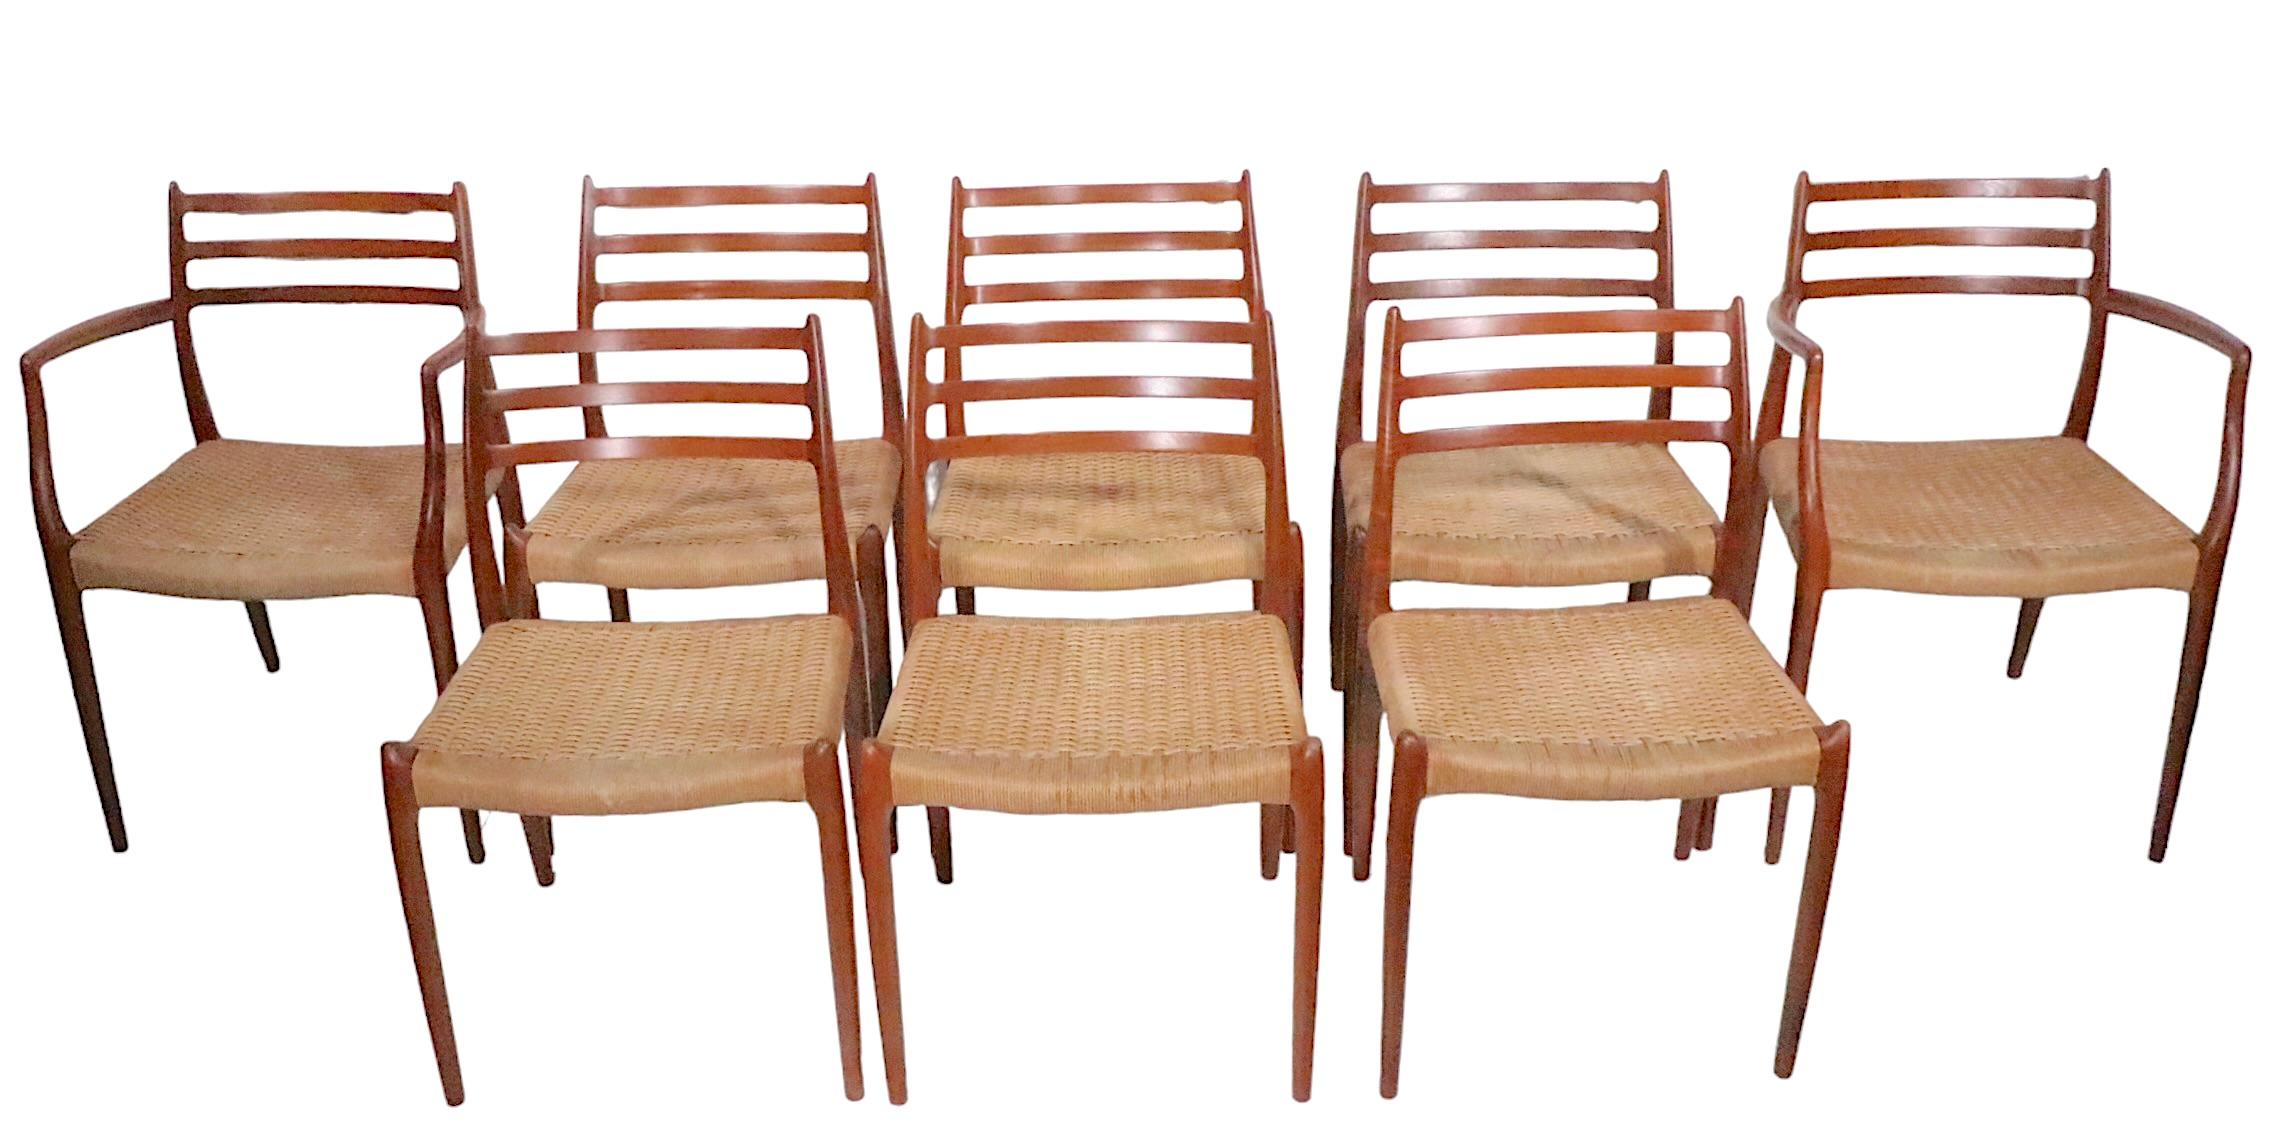 Außergewöhnlicher Satz von acht Esszimmerstühlen, entworfen von Niels Otto Moller, hergestellt in Dänemark in der J.L.Moller Mobelfabrik um 1960. Das Set besteht aus zwei Sesseln (Modell 62) und sechs Beistellstühlen (Modell 78). Die Stühle haben